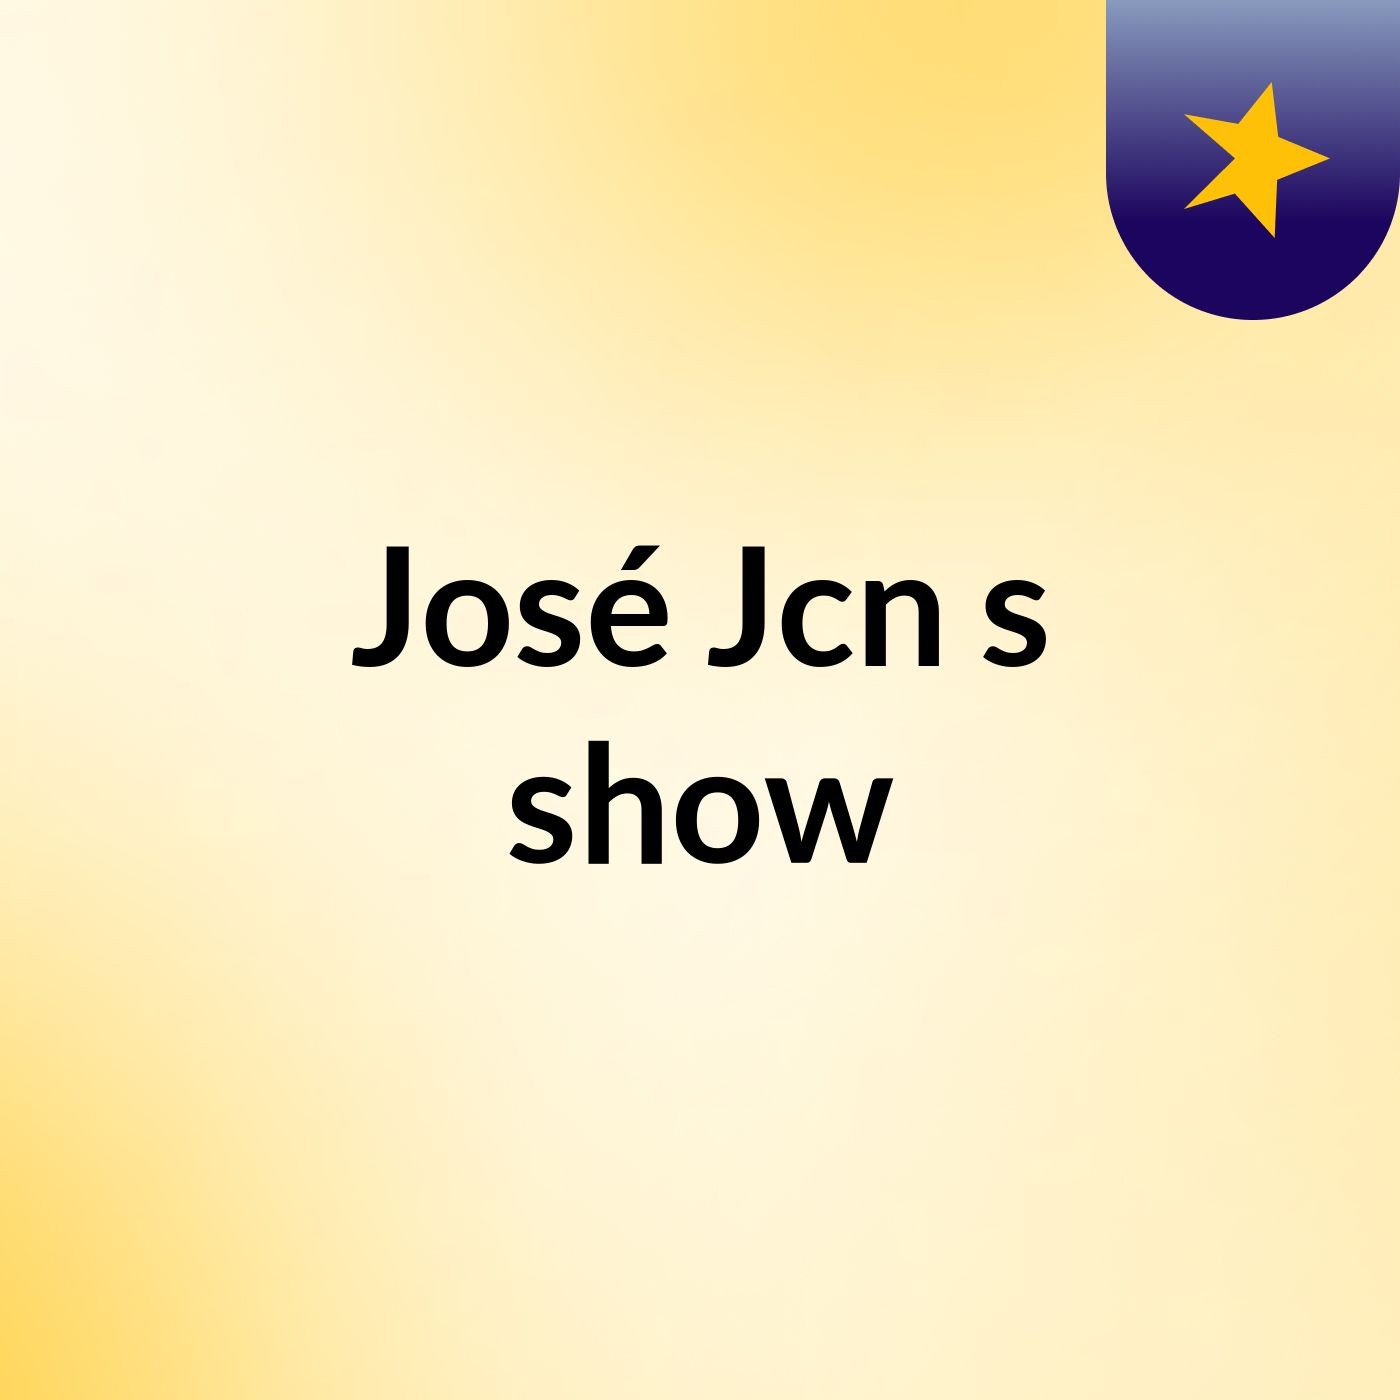 José Jcn's show